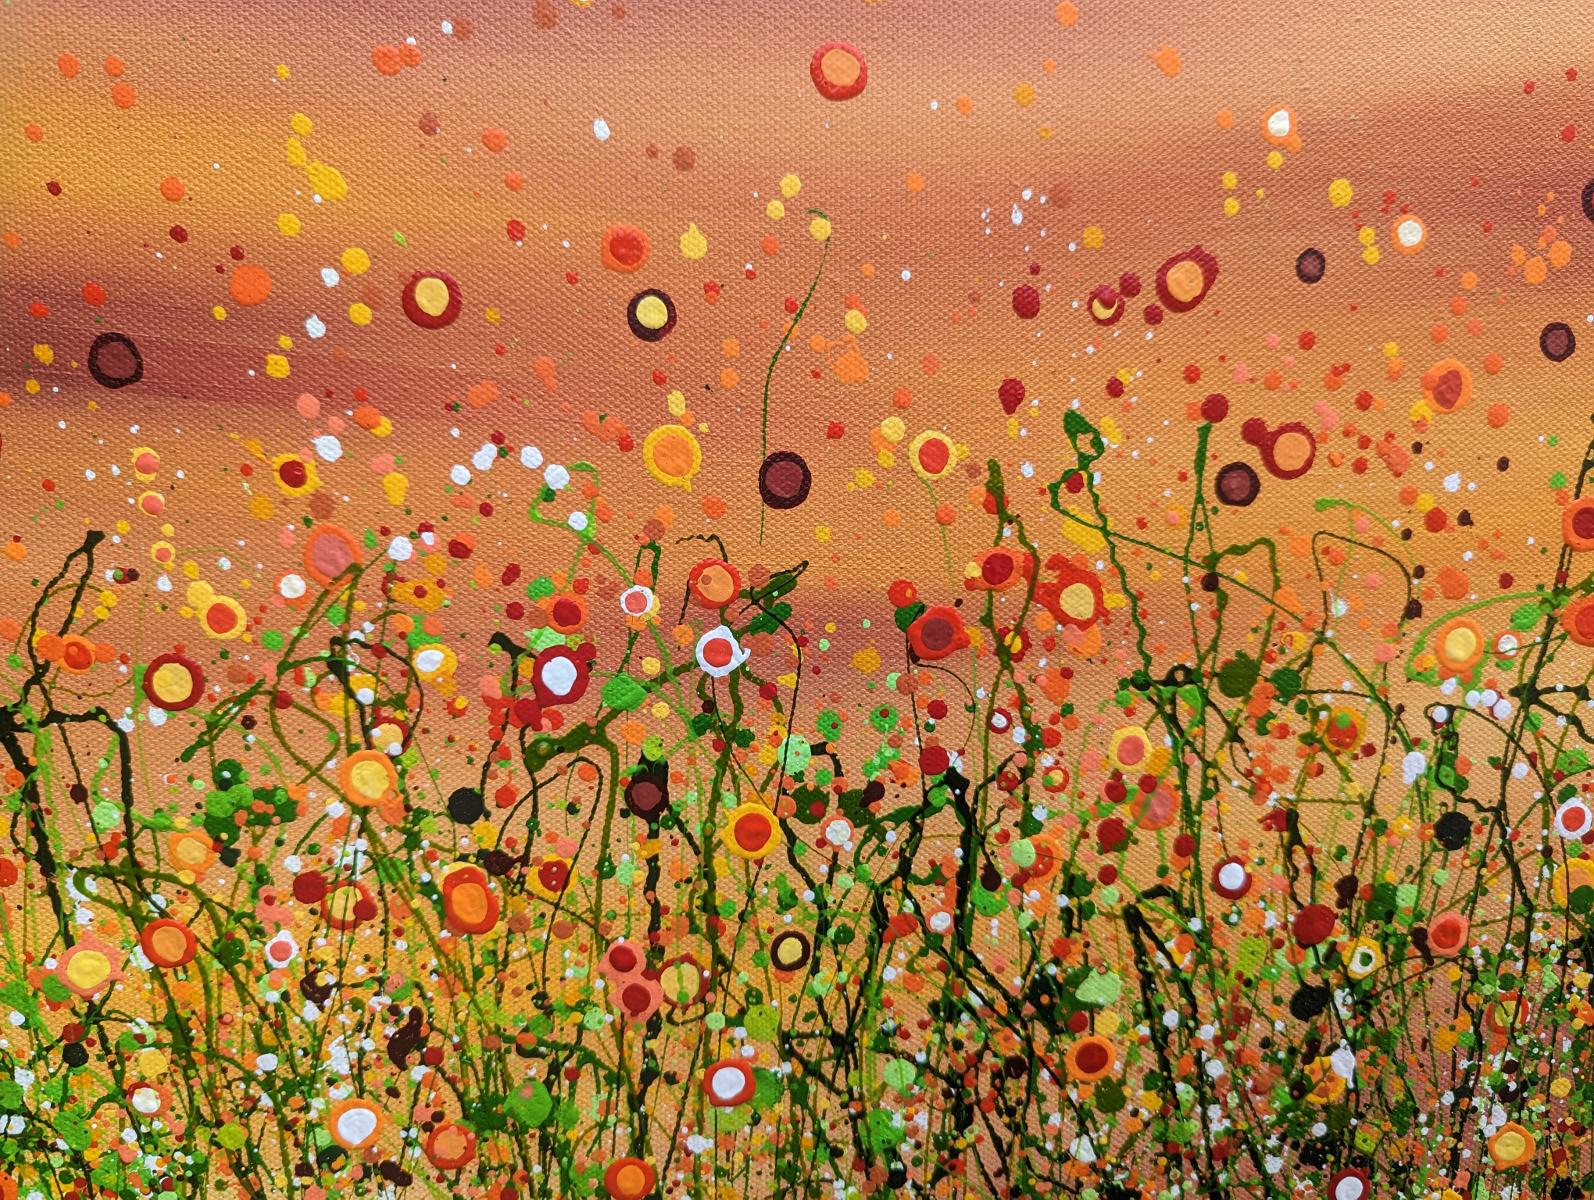 Popping Sunrise Meadows #2 - Eine skurrile Wiese voller Sonnenschein. Ein semi-abstraktes Originalgemälde von Lucy Moore. Mit ihrer charakteristischen Fadengras-Technik hat Lucy ihren klassischen Wiesenbildern eine halbabstrakte Wendung gegeben.